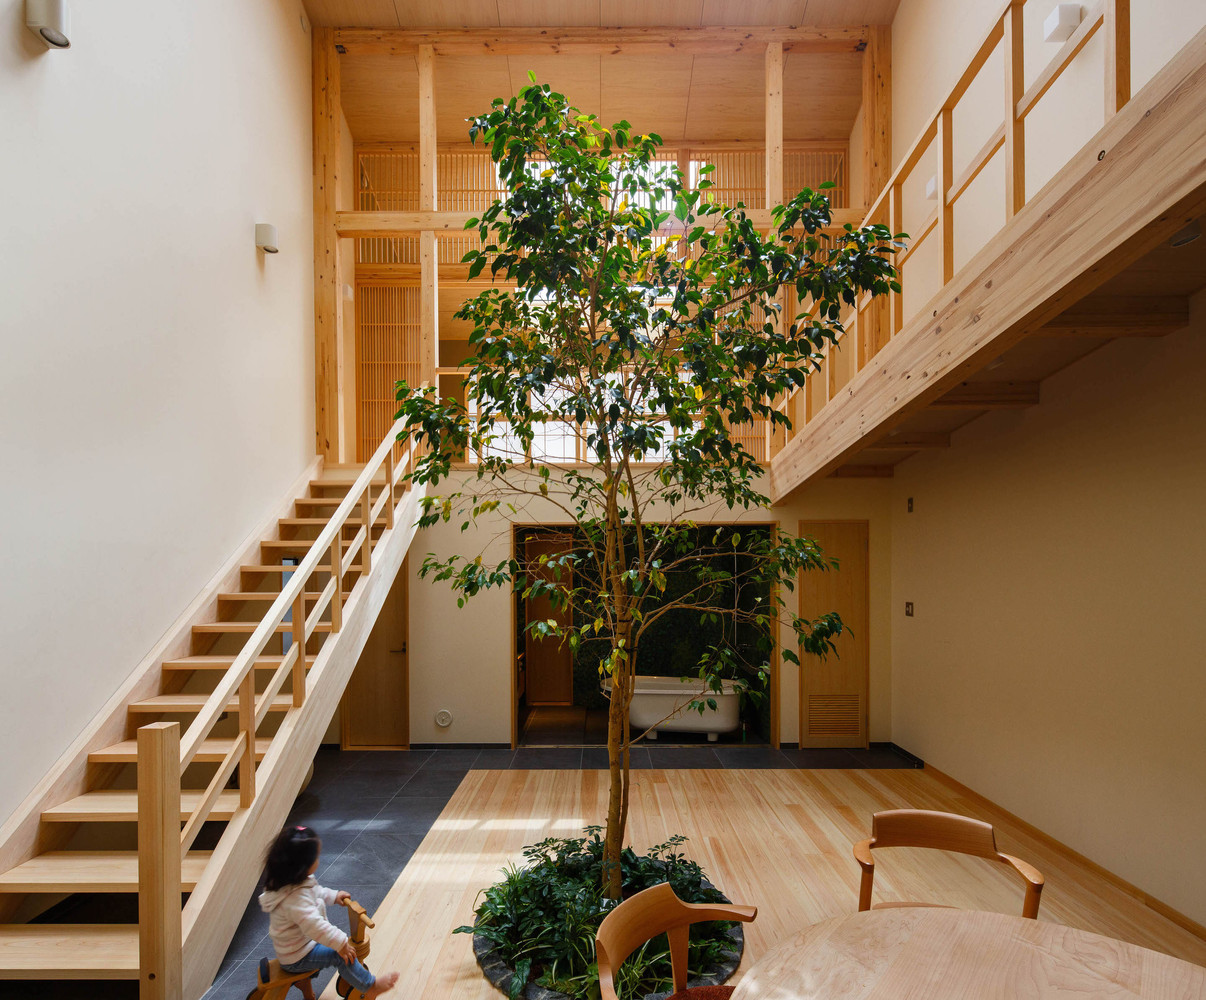 Ngôi nhà nằm trong một khu dân cư yên tĩnh ở phía Bắc thành phố Kyoto, là không gian sống của một cặp vợ chồng và 3 đứa con nhỏ.